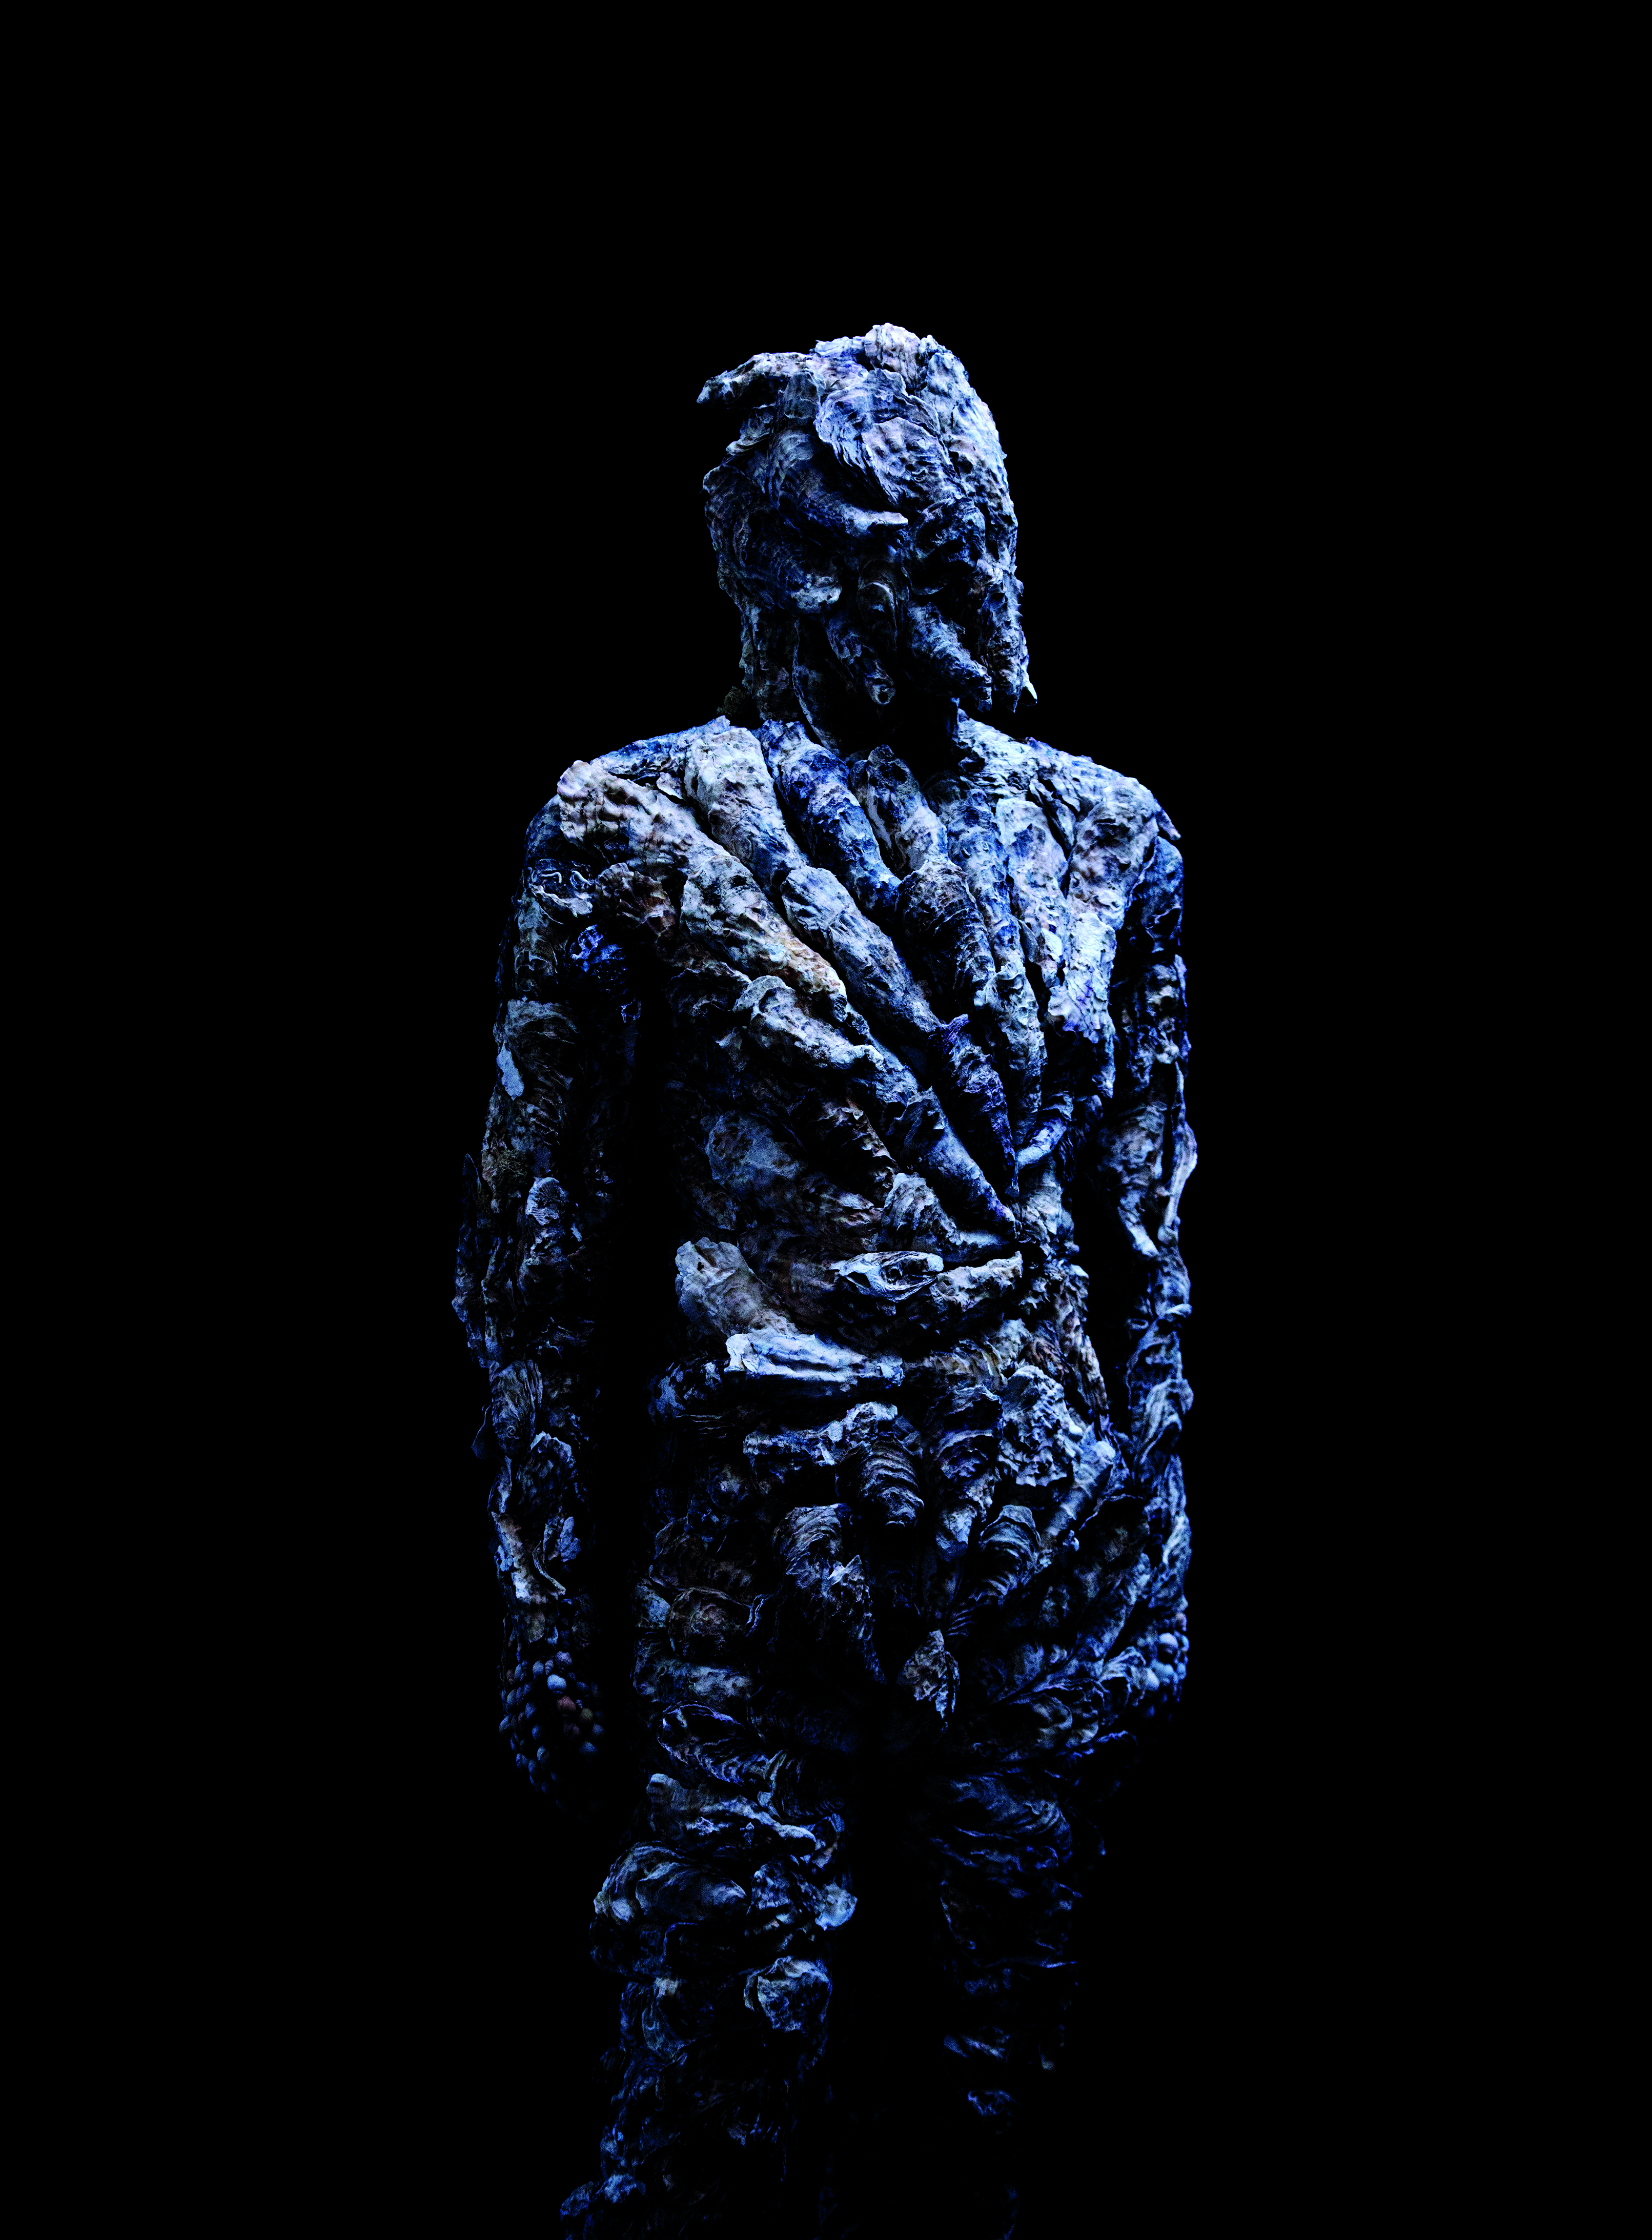 Huvud och överkropp av människoliknande varelse som istället för hud och ansikte täcks av en kraftigt skrovlig yta i blågrått.